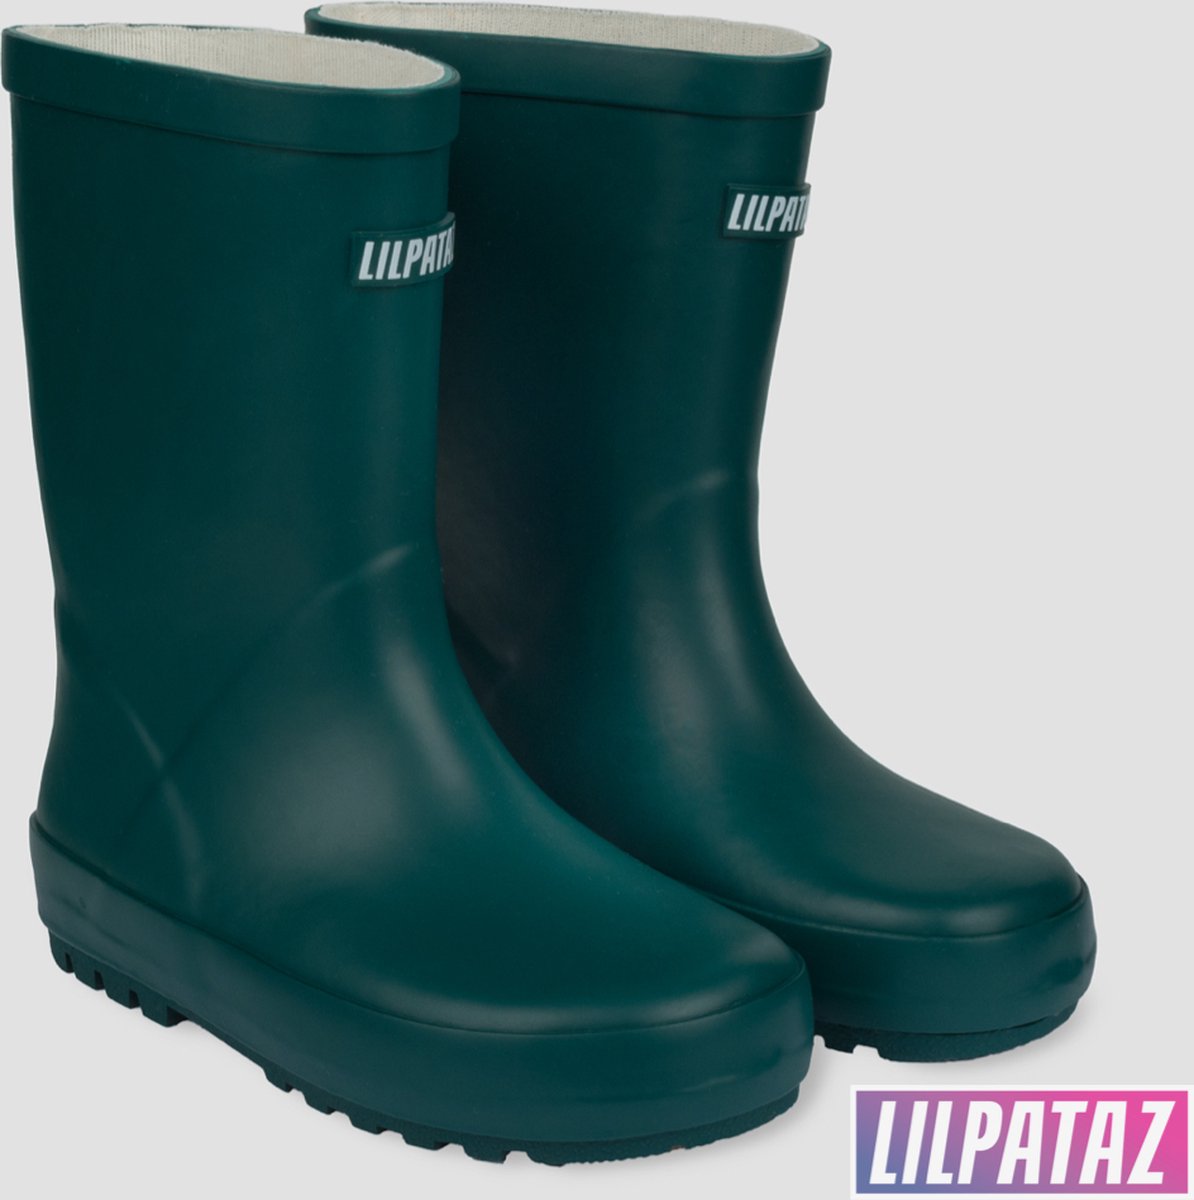 LilPataz Rainboot - Regenlaars kinderen - Jongens Meisjes - Groen - kinder regenlaarzen - Maat 27